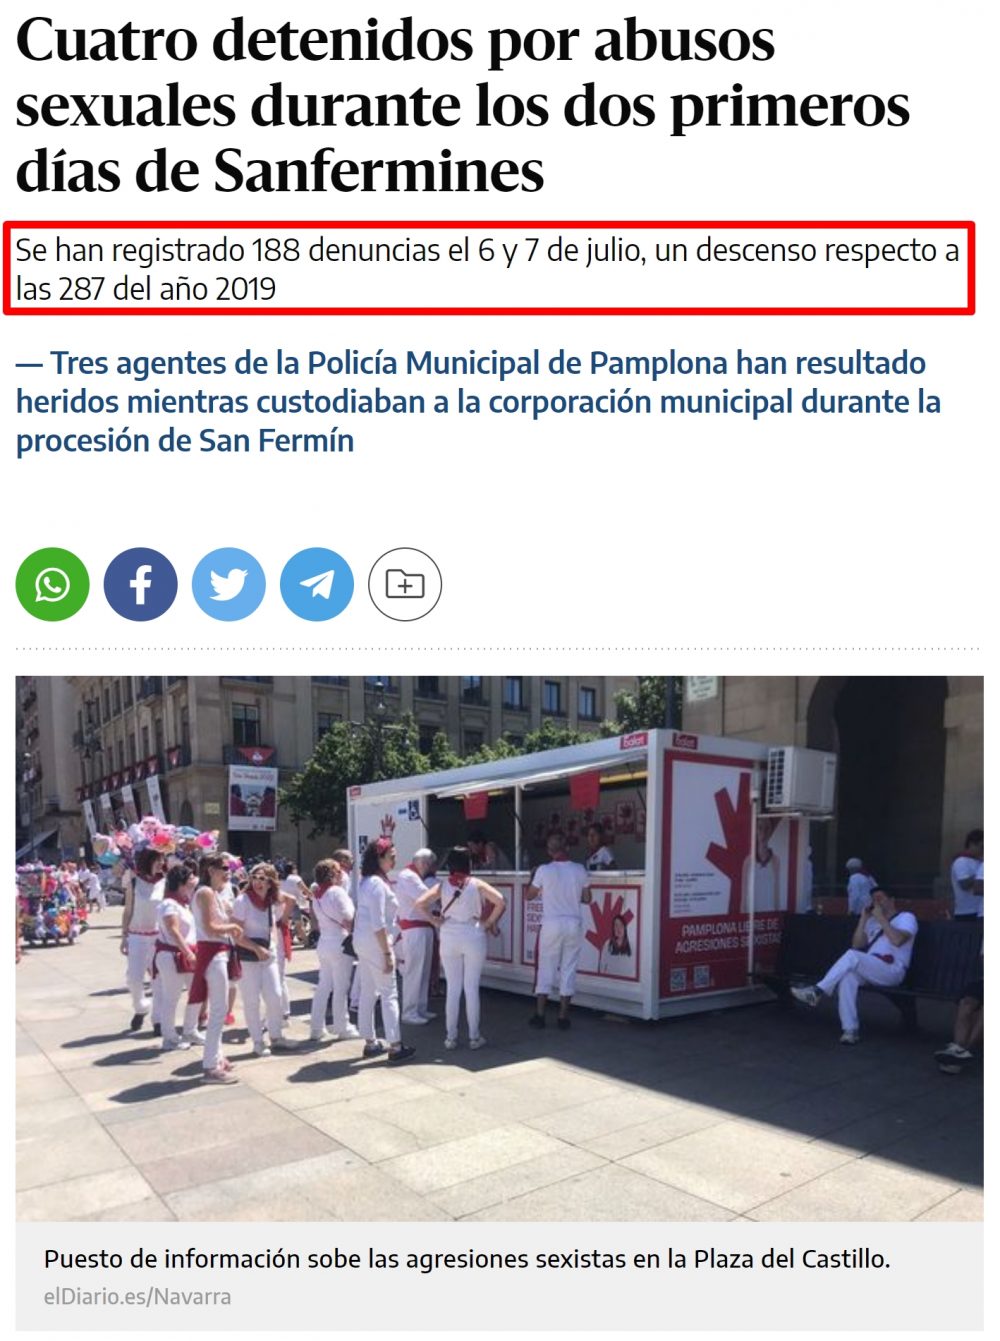 Olvidad el titular. La verdadera noticia: las denuncias por agresión secsual en San Fermín descienden un 34%